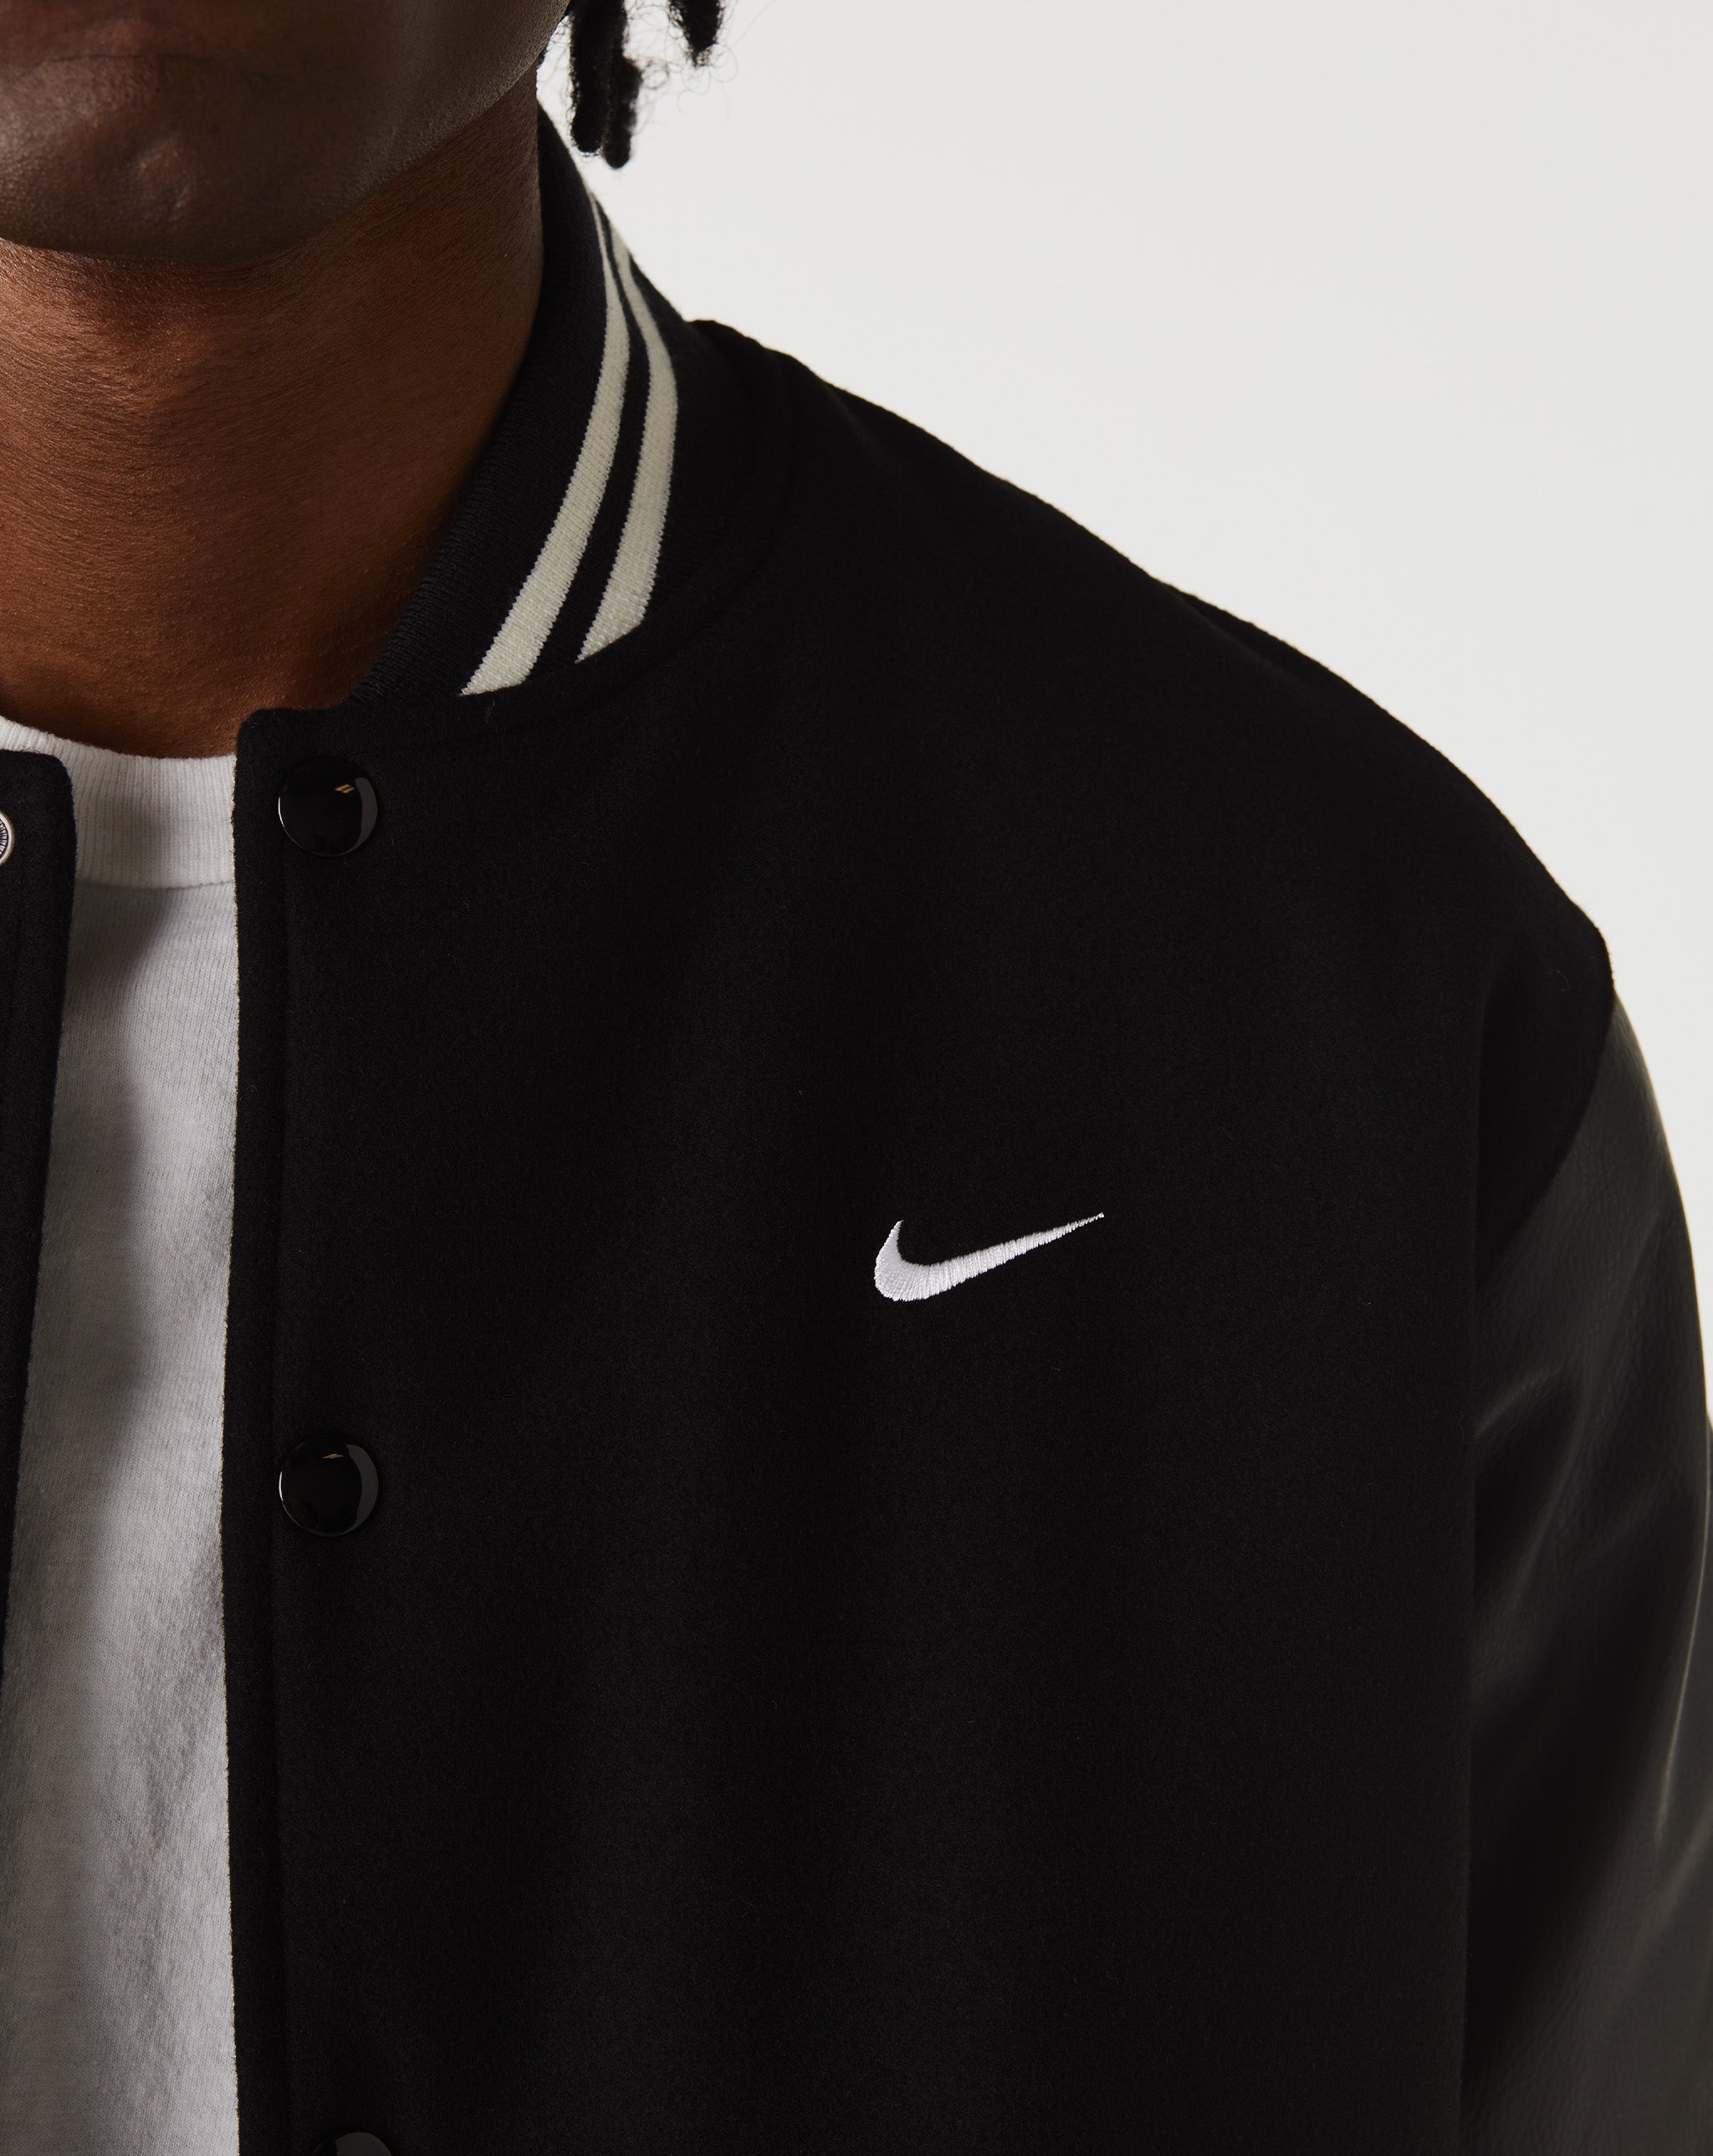 Nike butterfly-print semi-sheer shirt dress  - Cheap Urlfreeze Jordan outlet